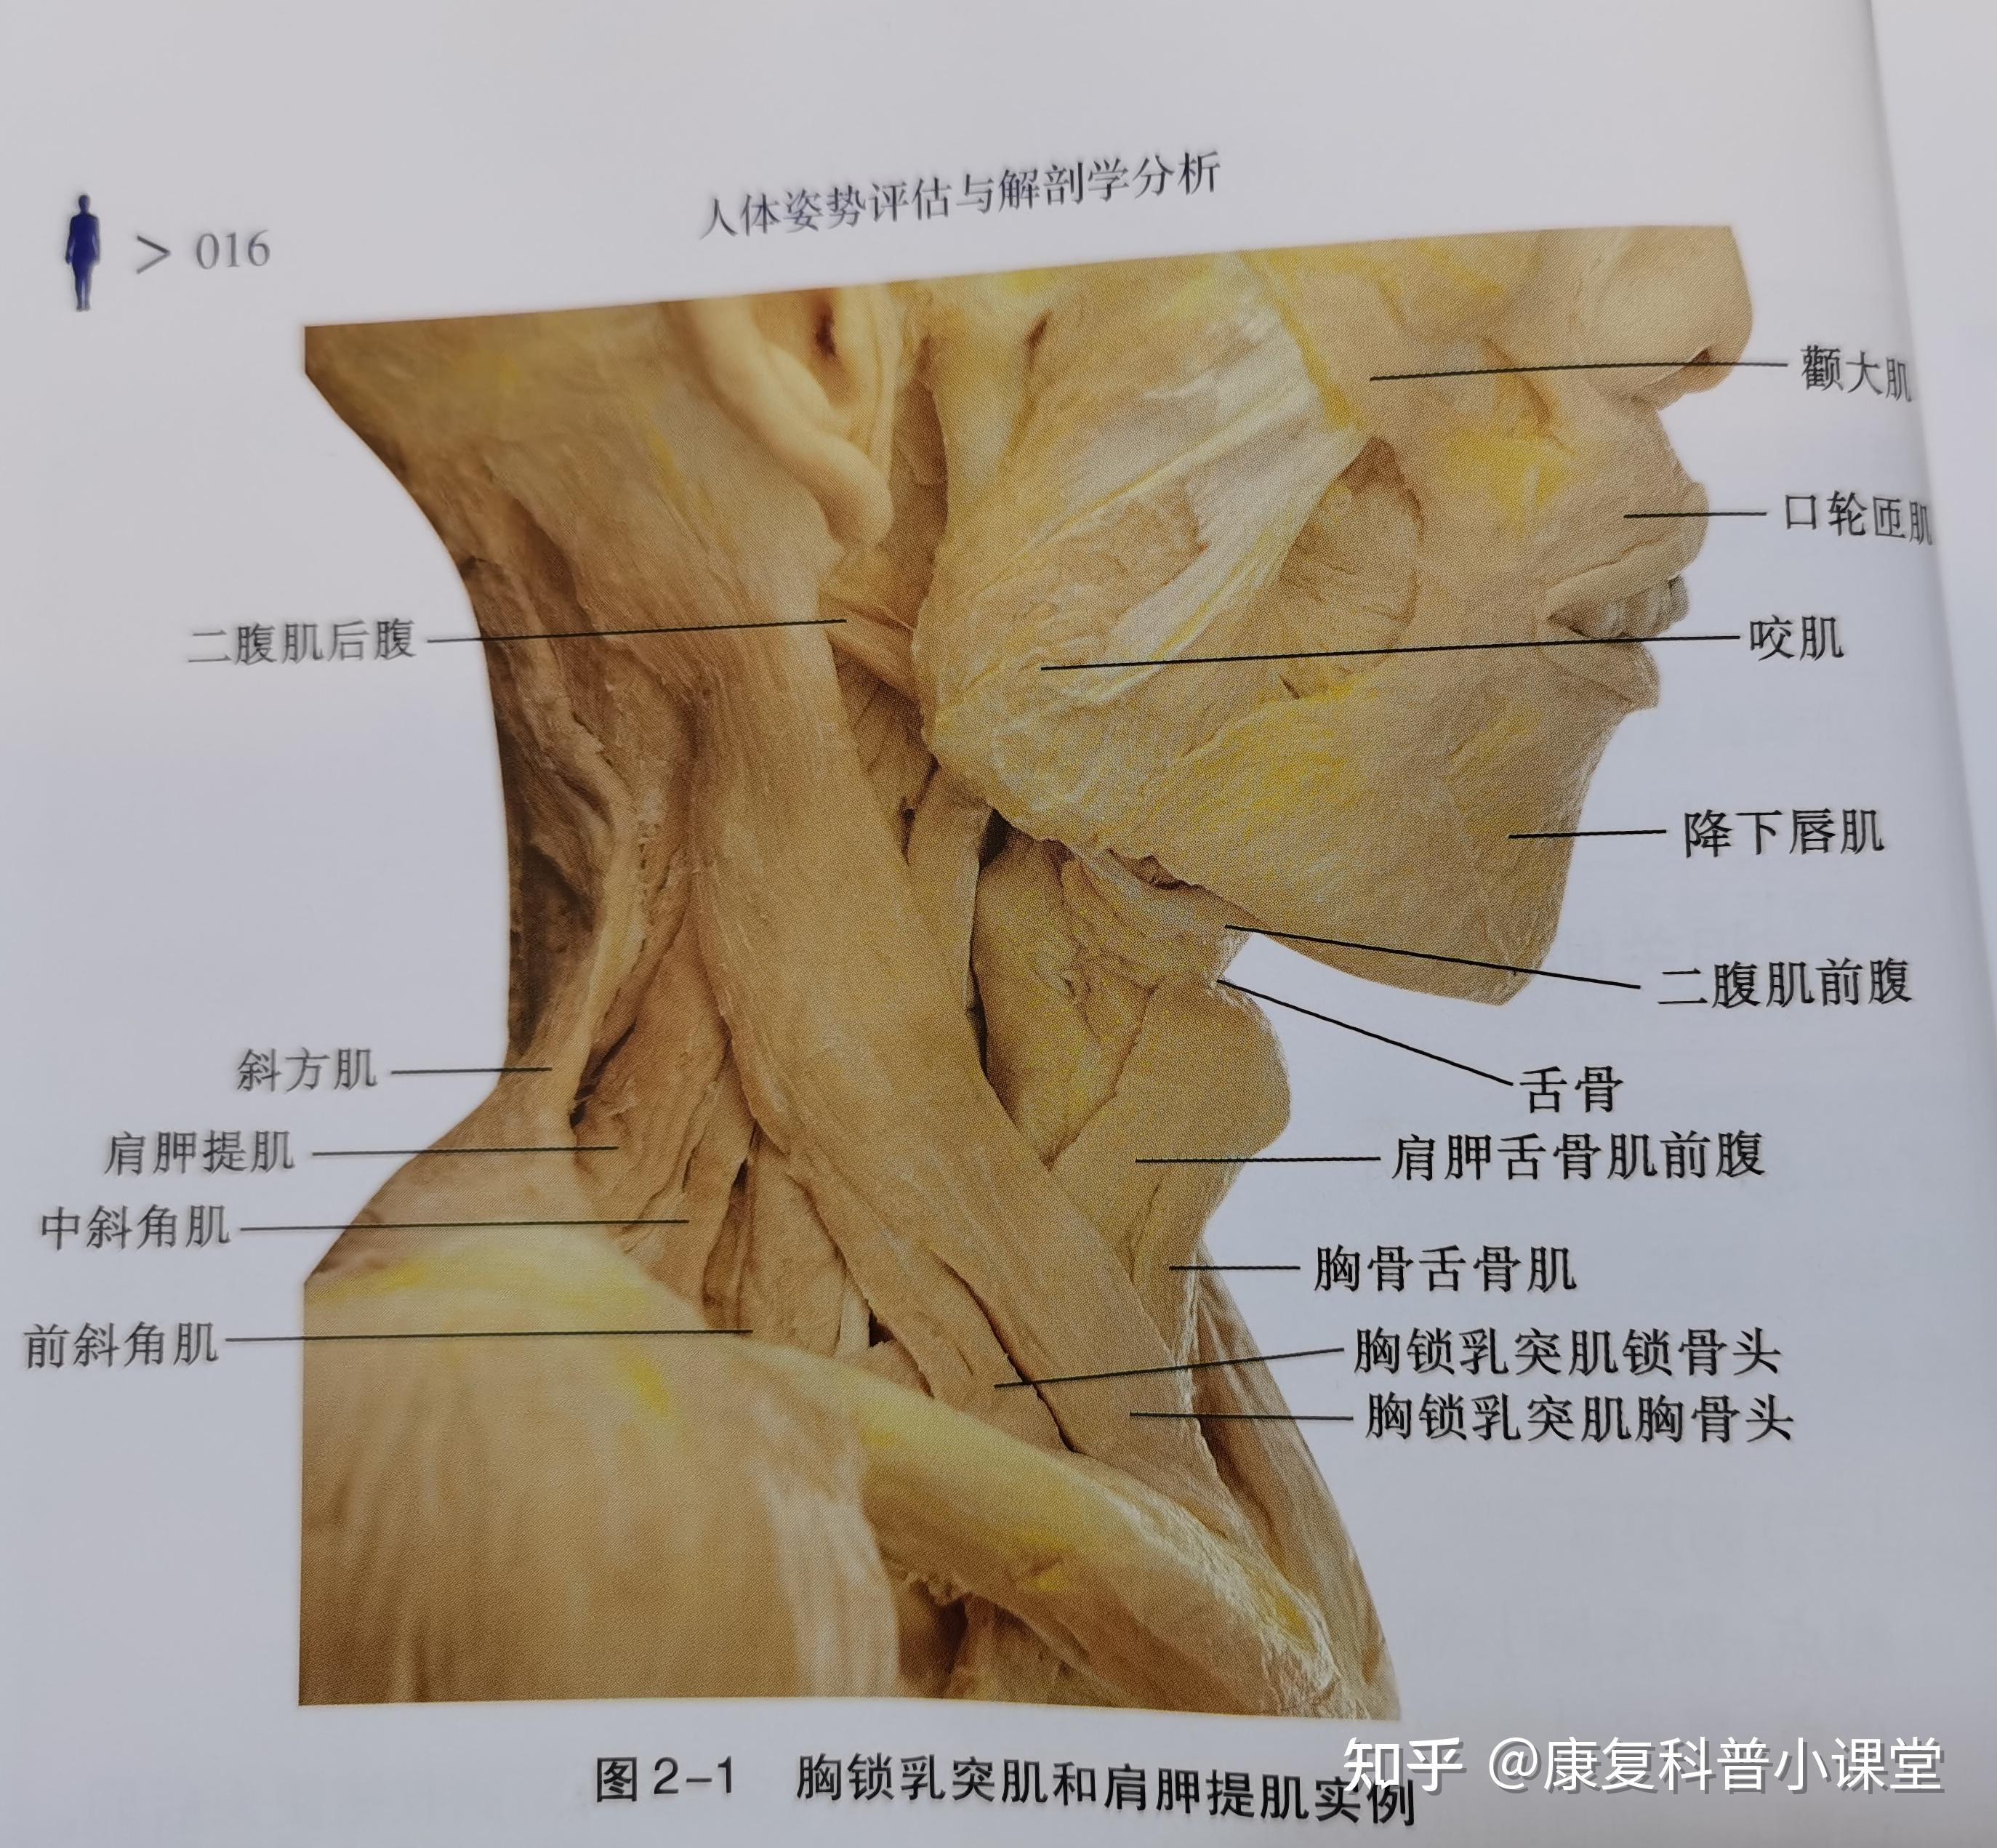 脖子肌肉解剖图图片